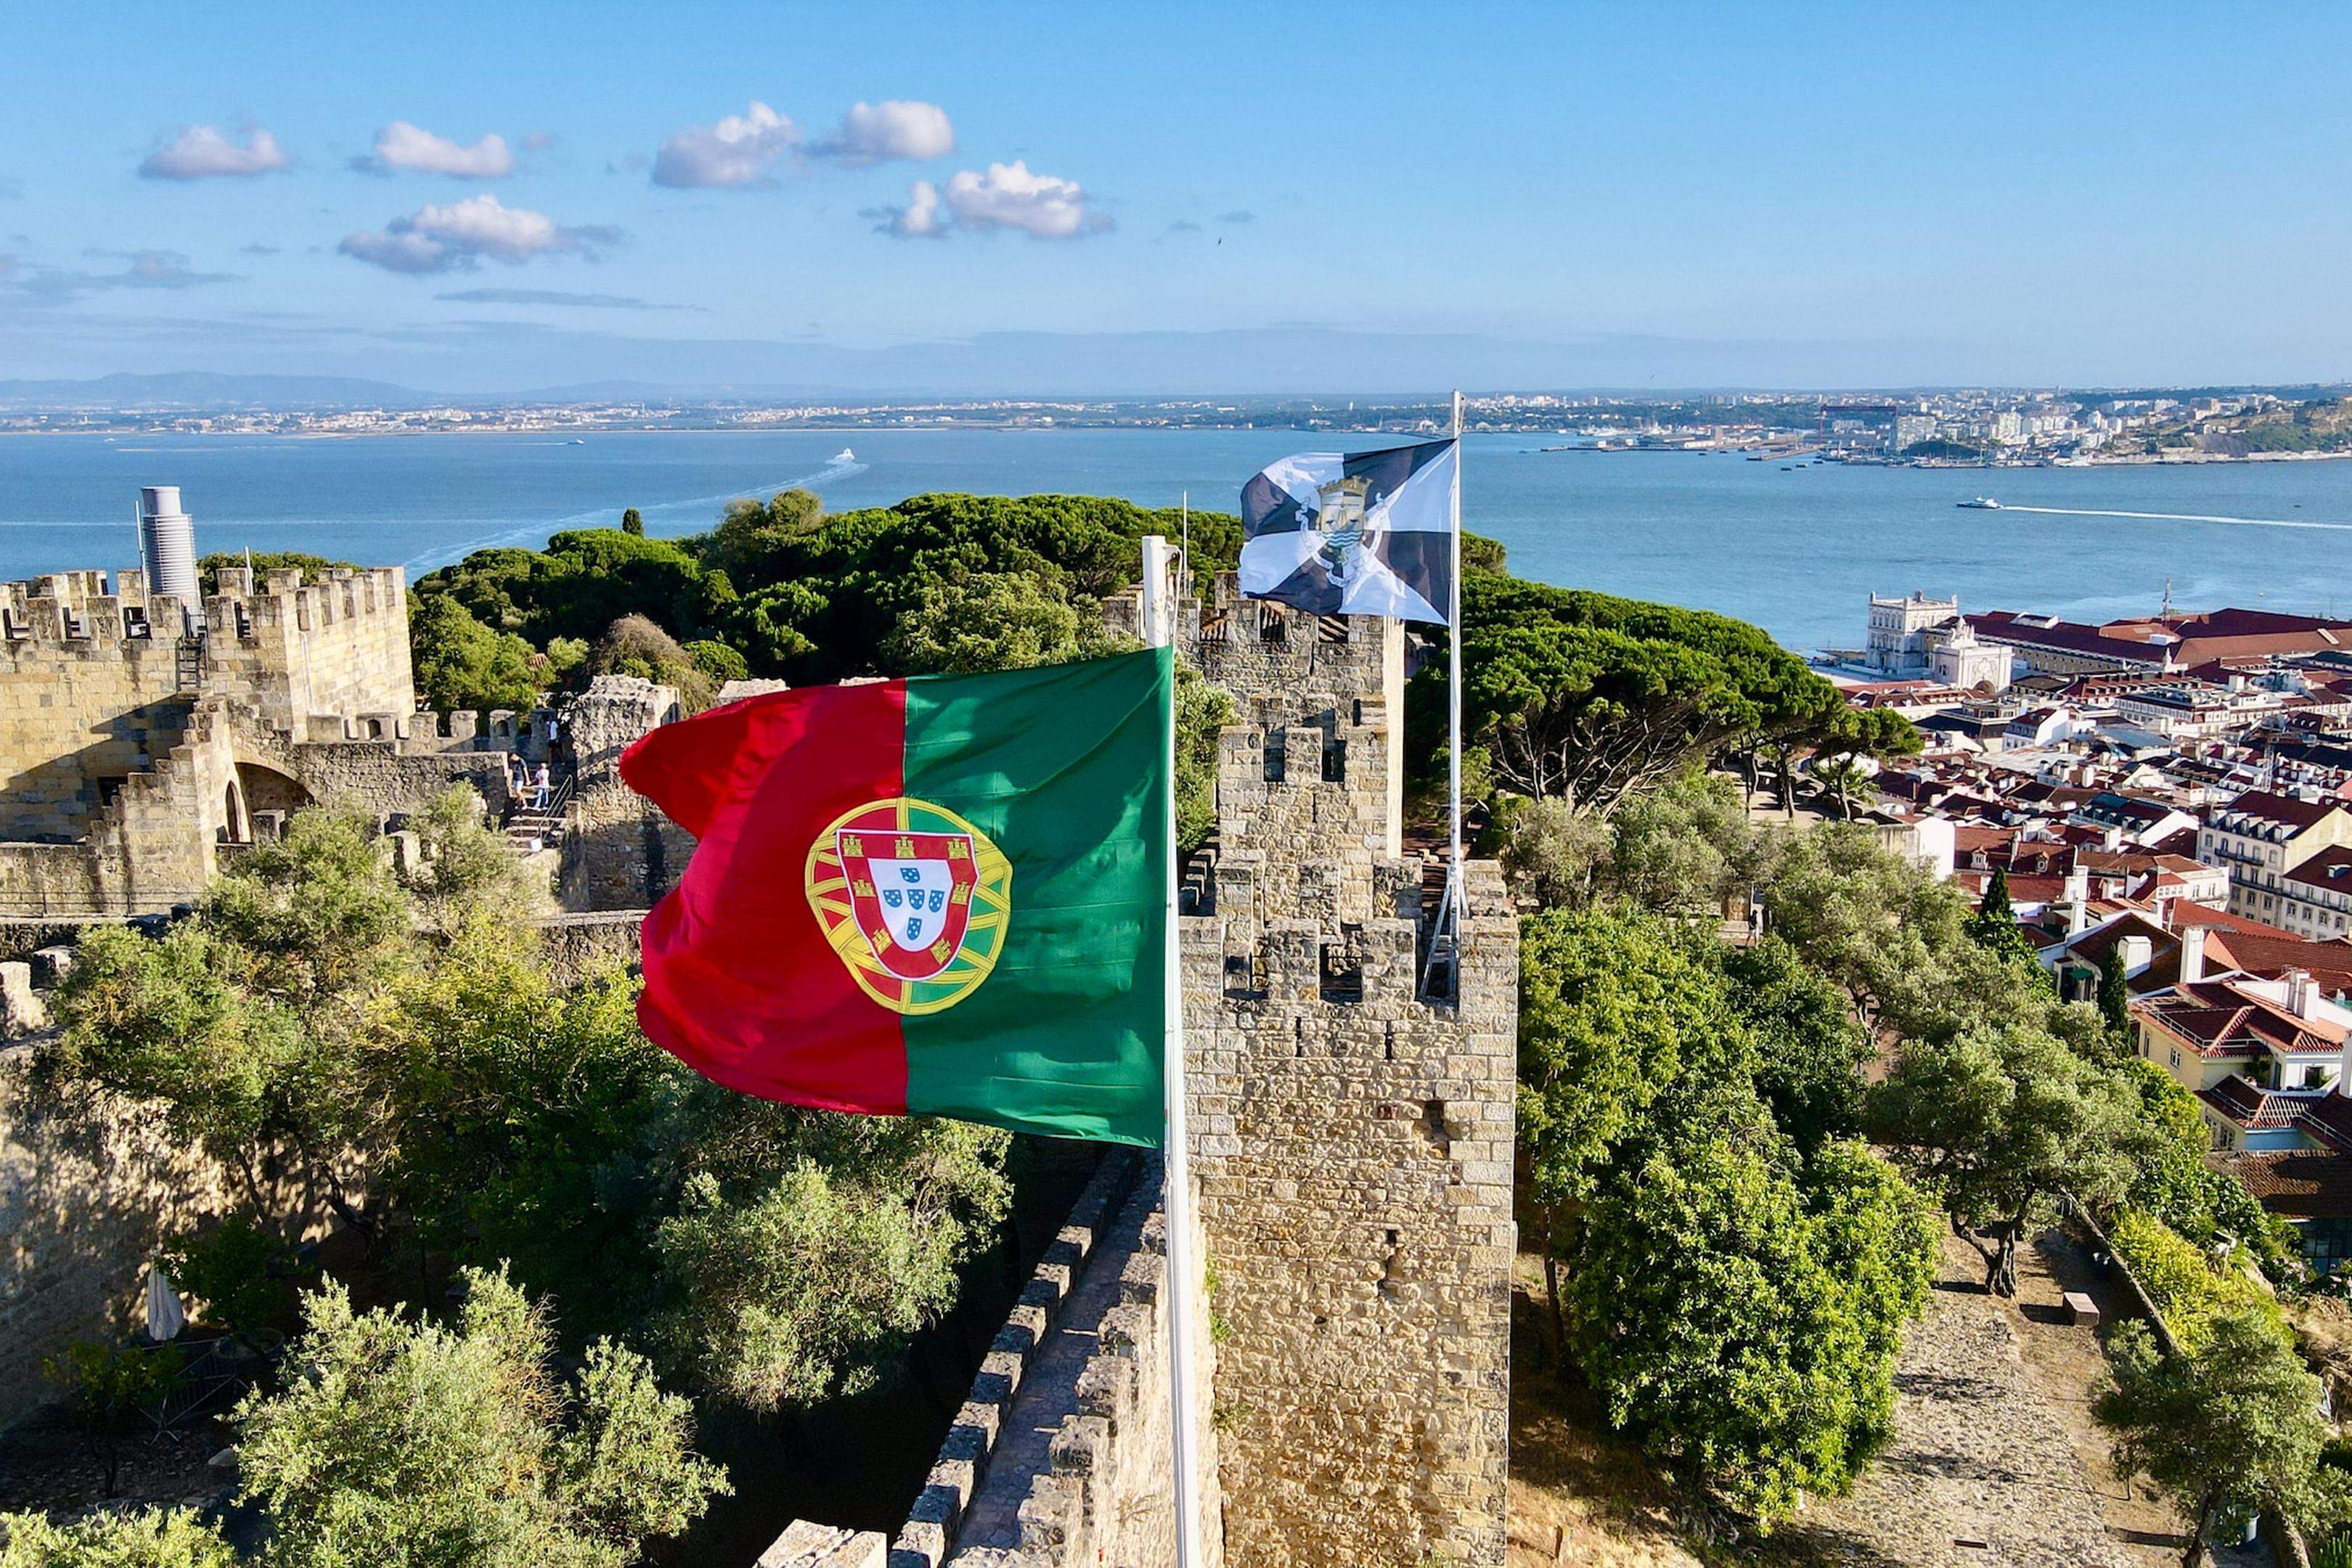 Residente Fiscal em Portugal: quem é considerado?